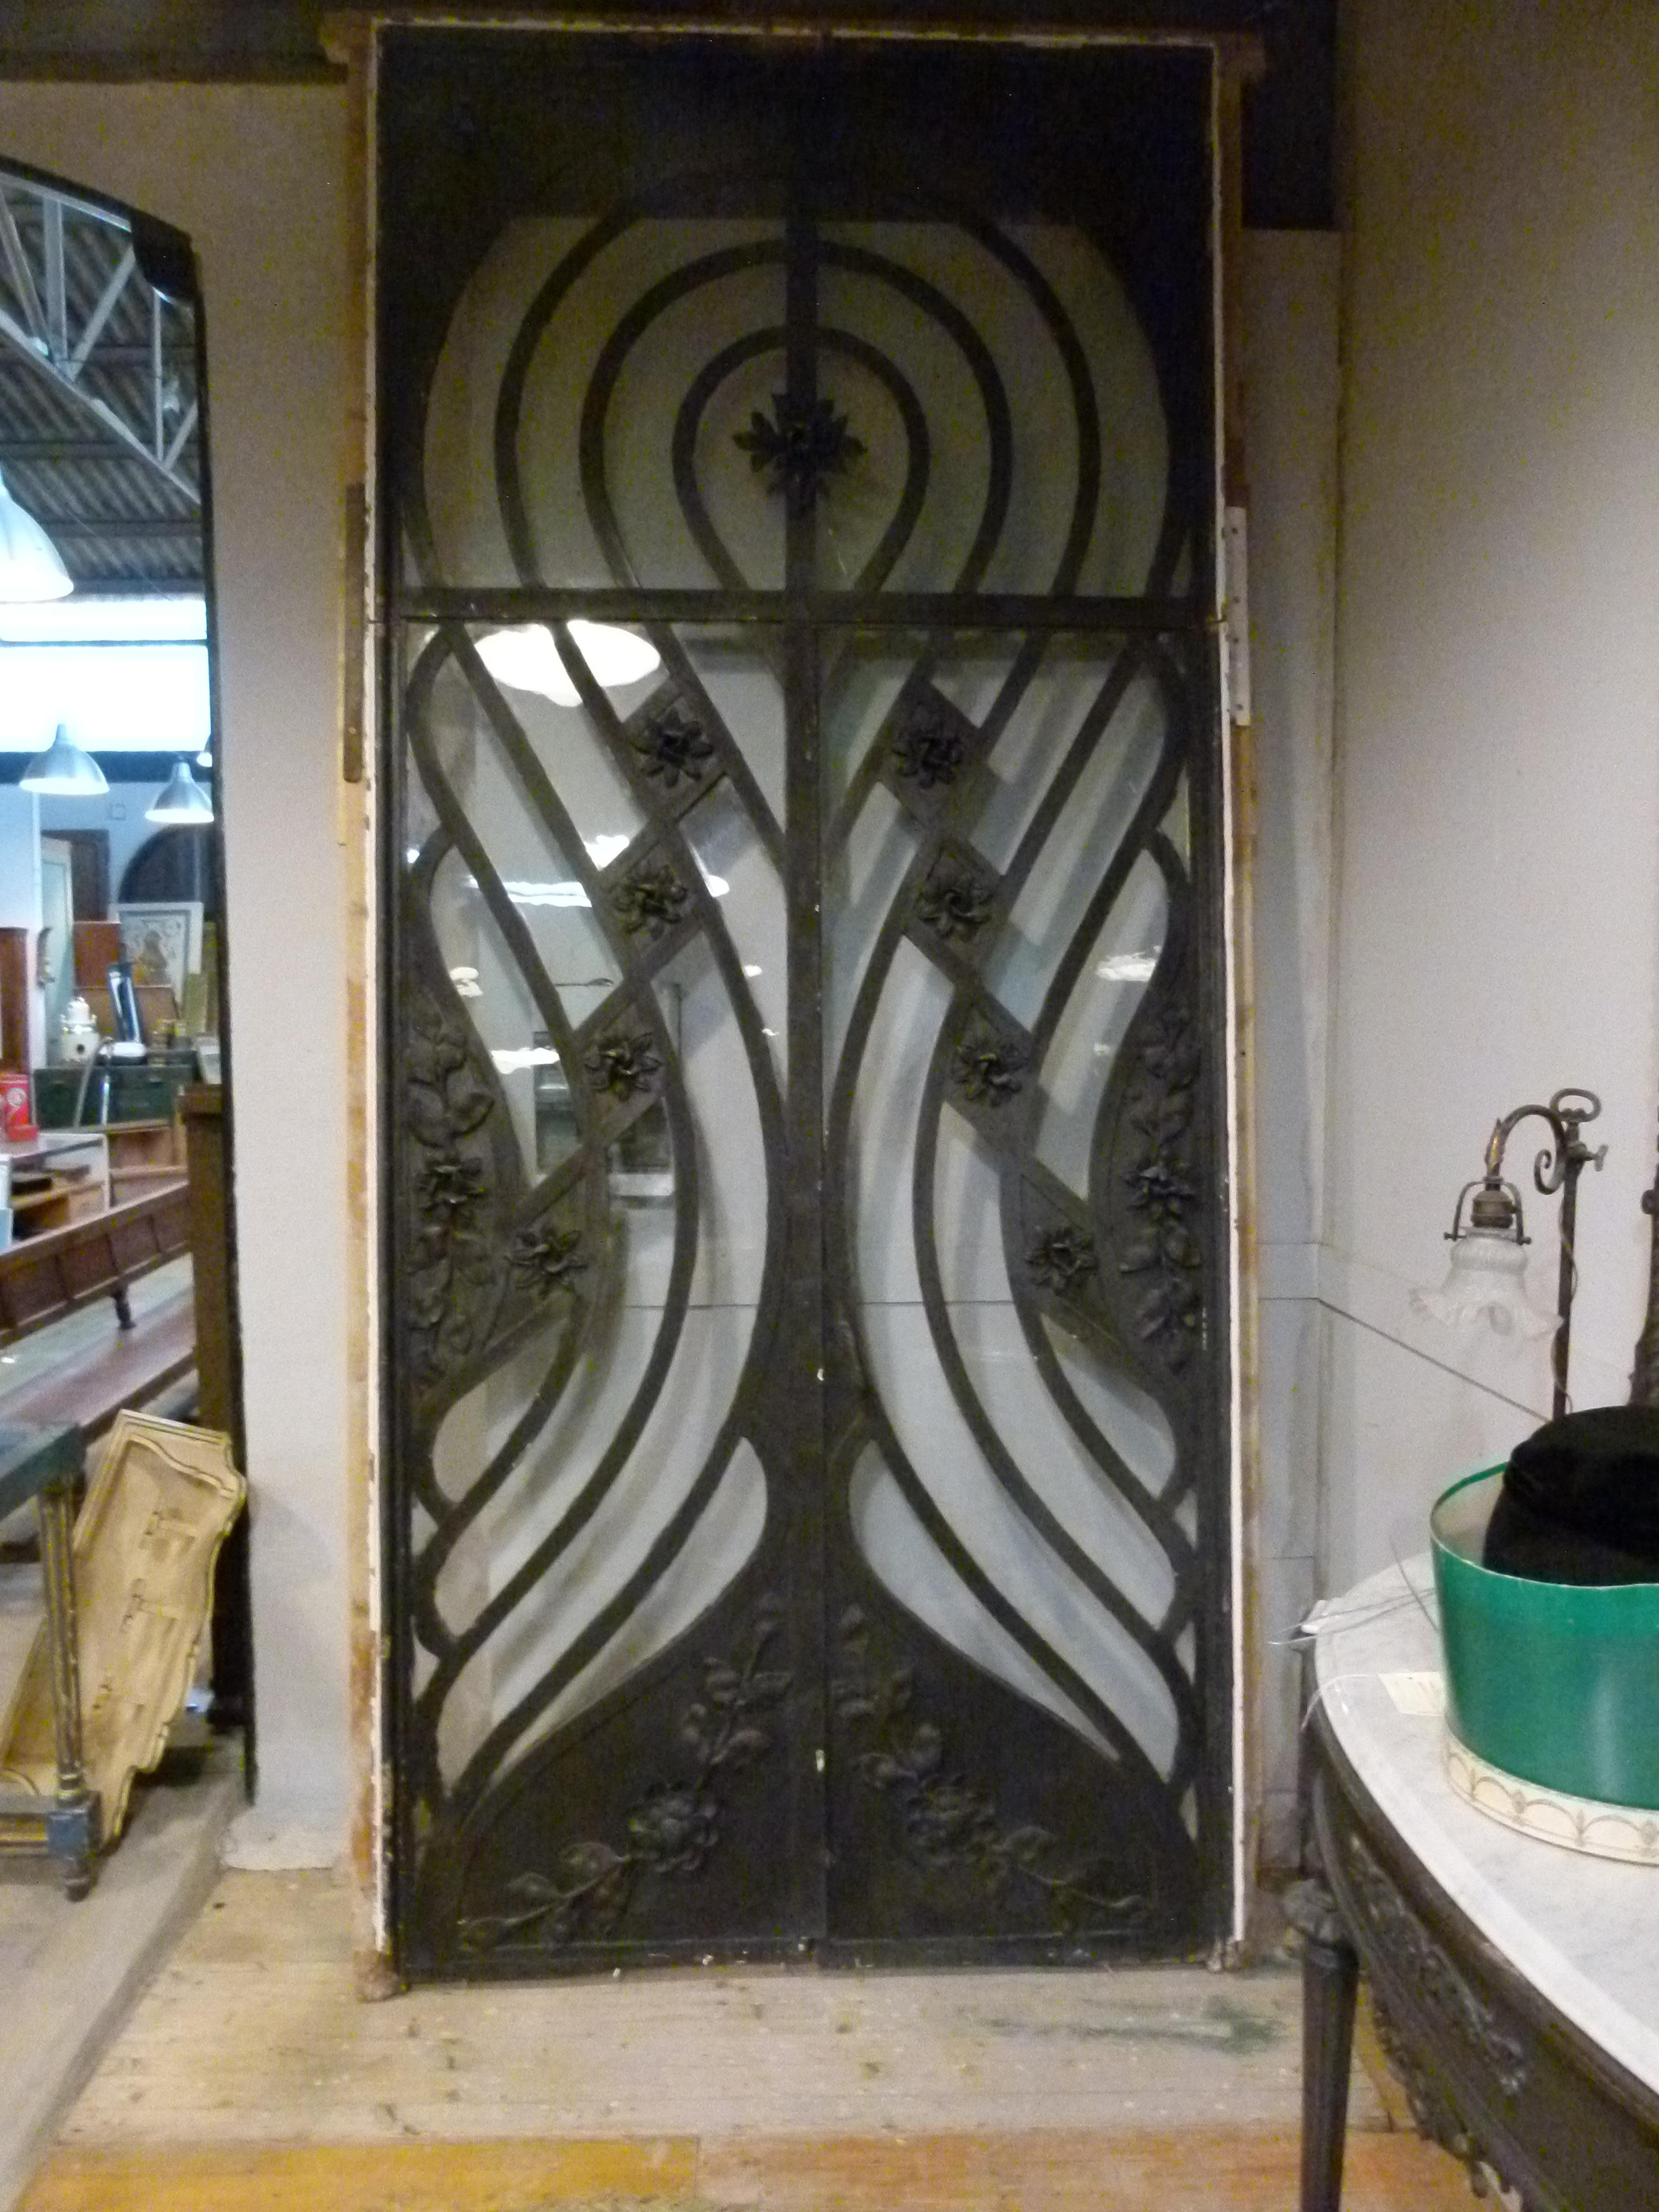 schmiedeeiserne Doppeltür aus dem 19. Jahrhundert im Jugendstil.
Eine große Doppeltür, die zum Eingang eines vornehmen Hauses in Barcelona gehörte. Es besteht aus floralen Verzierungen und symmetrischen Linien, die die Tür in der Art und Weise